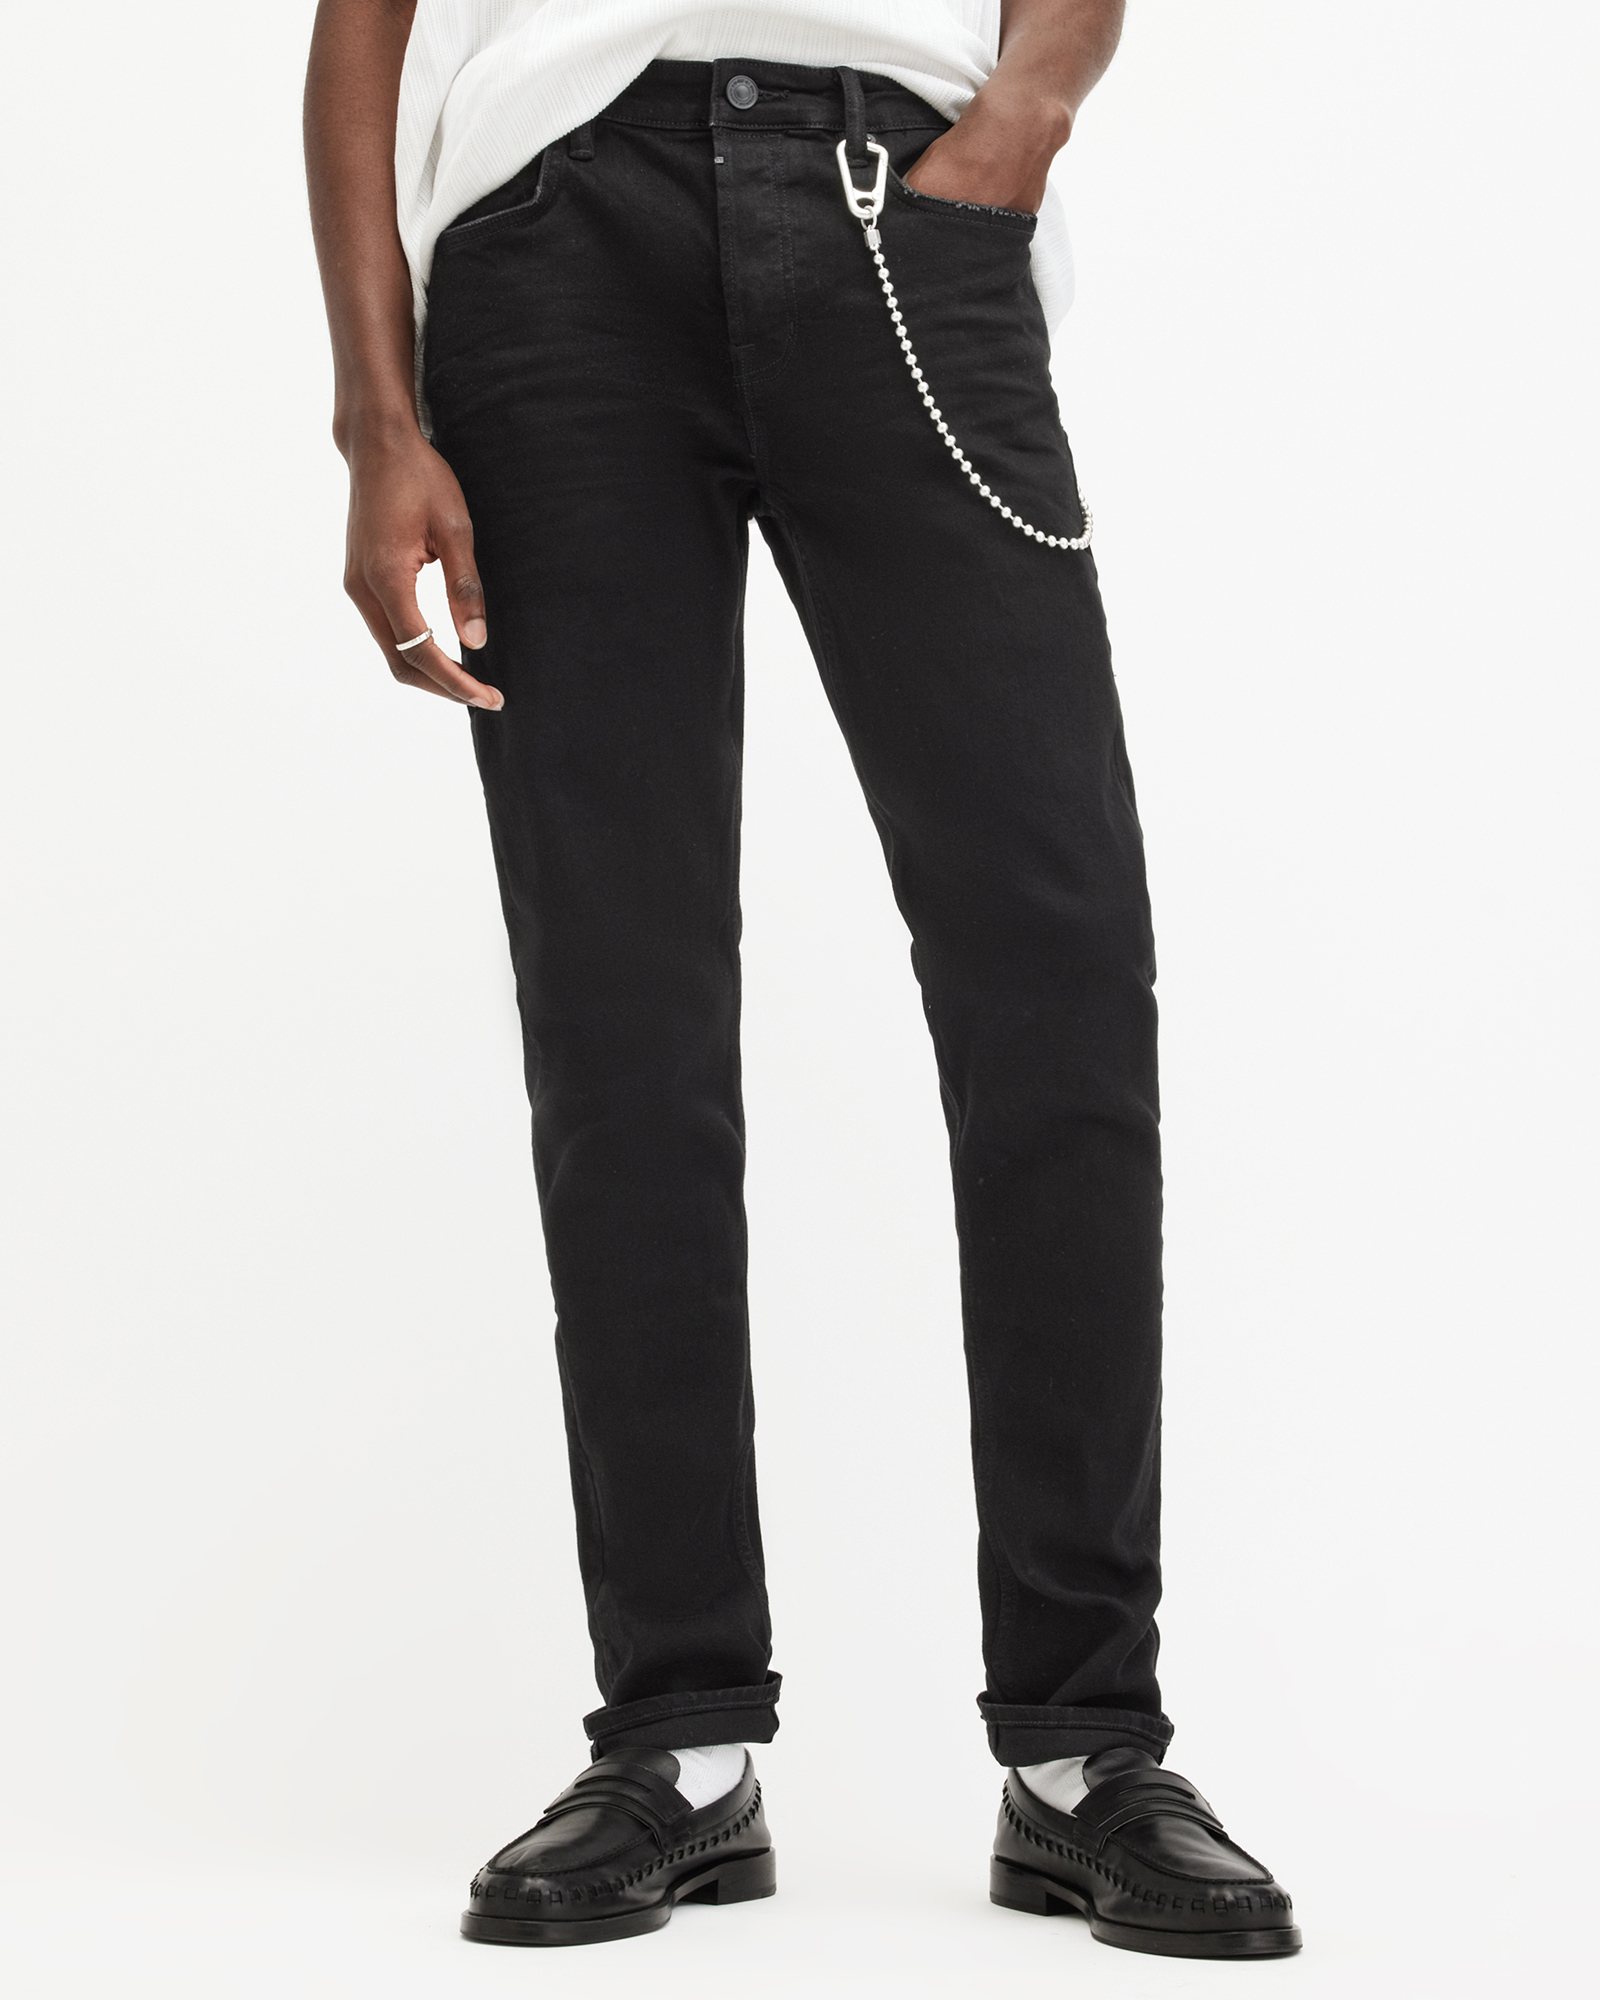 AllSaints Men's Cotton Traditional Cigarette Skinny Jeans, Black, Size: 30/L32